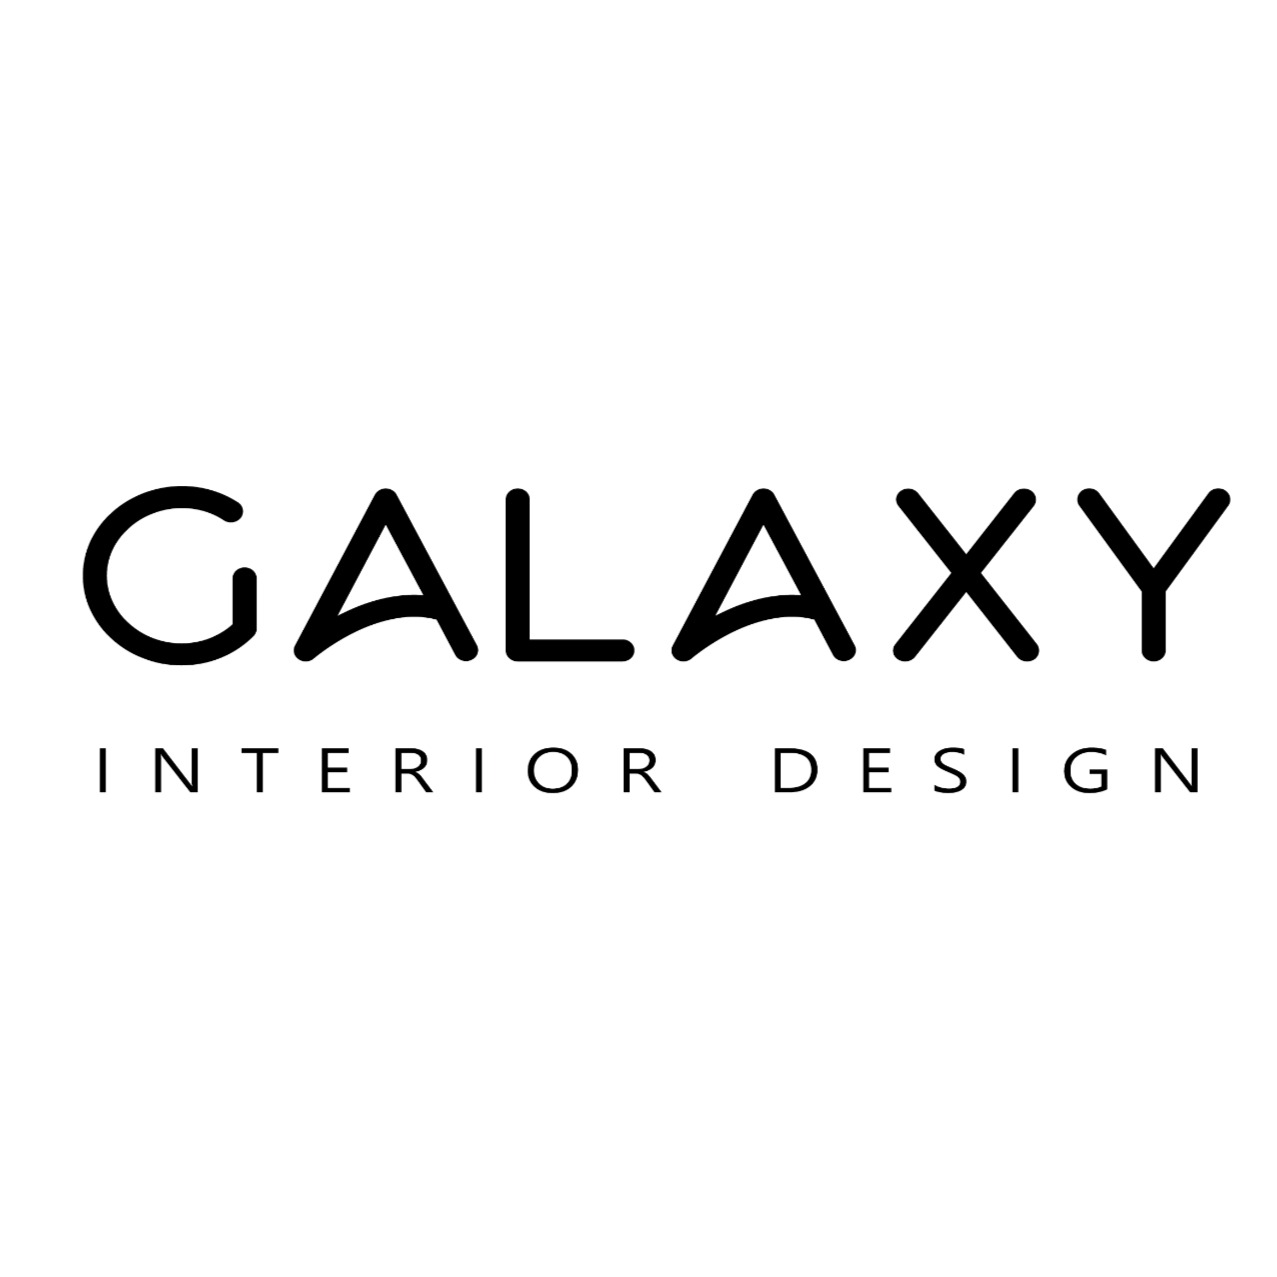 Galaxy Interior Design